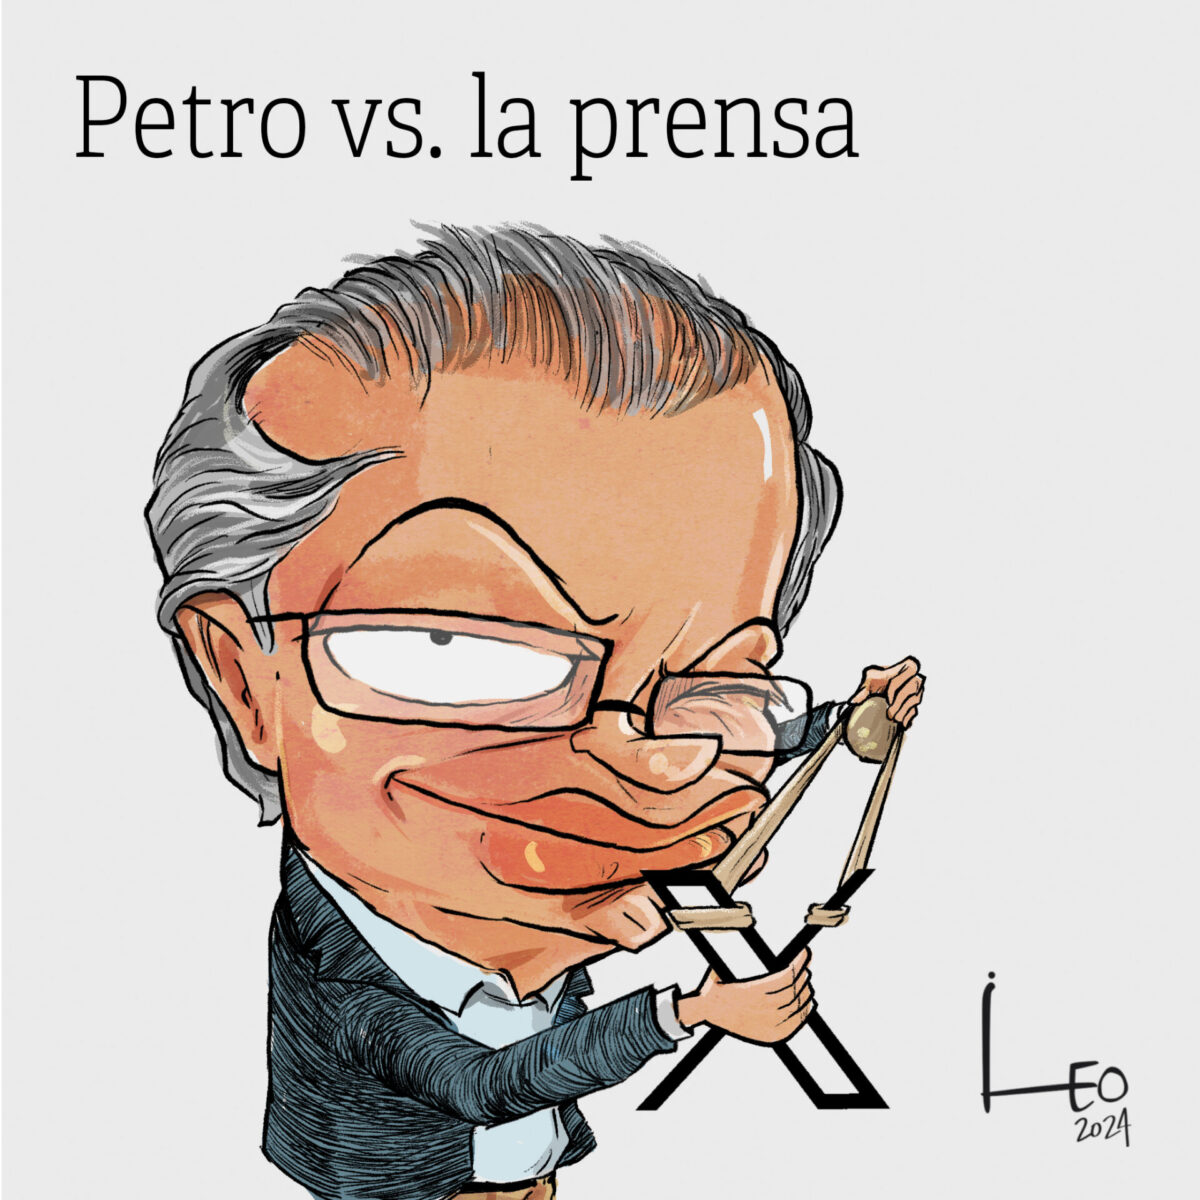 Petro vs. la prensa